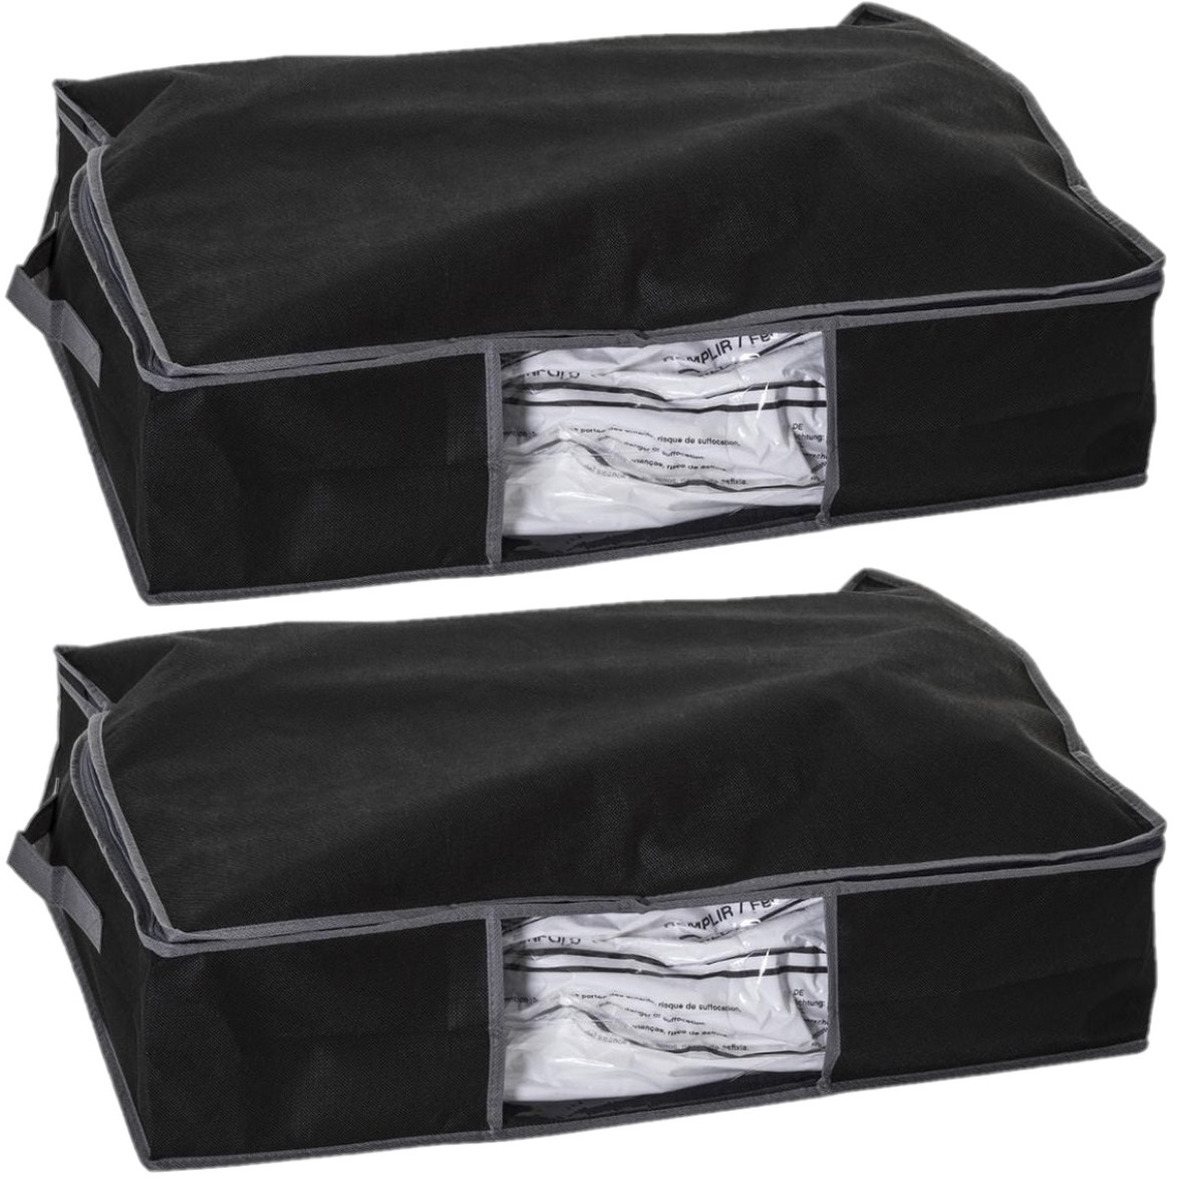 2x Stuks dekbed-kussen opberghoes zwart met vacuumzak 60 x 45 x 15 cm